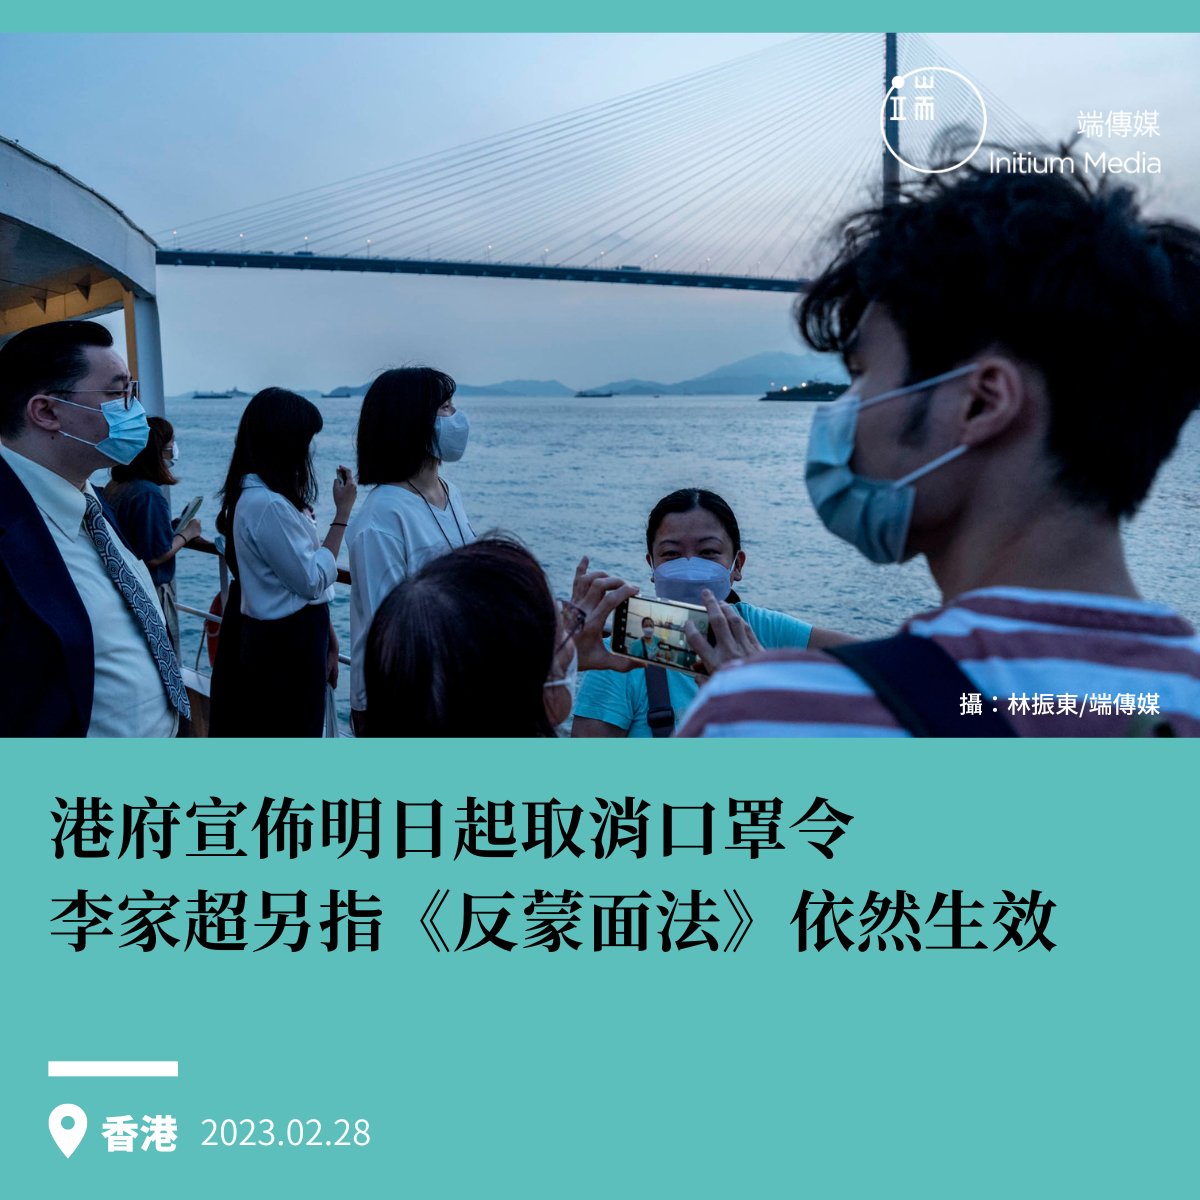 香港行政長官李家超今早宣佈, 將於明日(3月1日)起全面取消口罩令， 取消後香港室內、戶外及公共交通工具將不再要求佩戴口罩，「現時是適當時候全面取消口罩令。」，但同時稱《禁止蒙面規例》目前仍然生效，指會適時檢討，惟目前不會處理。